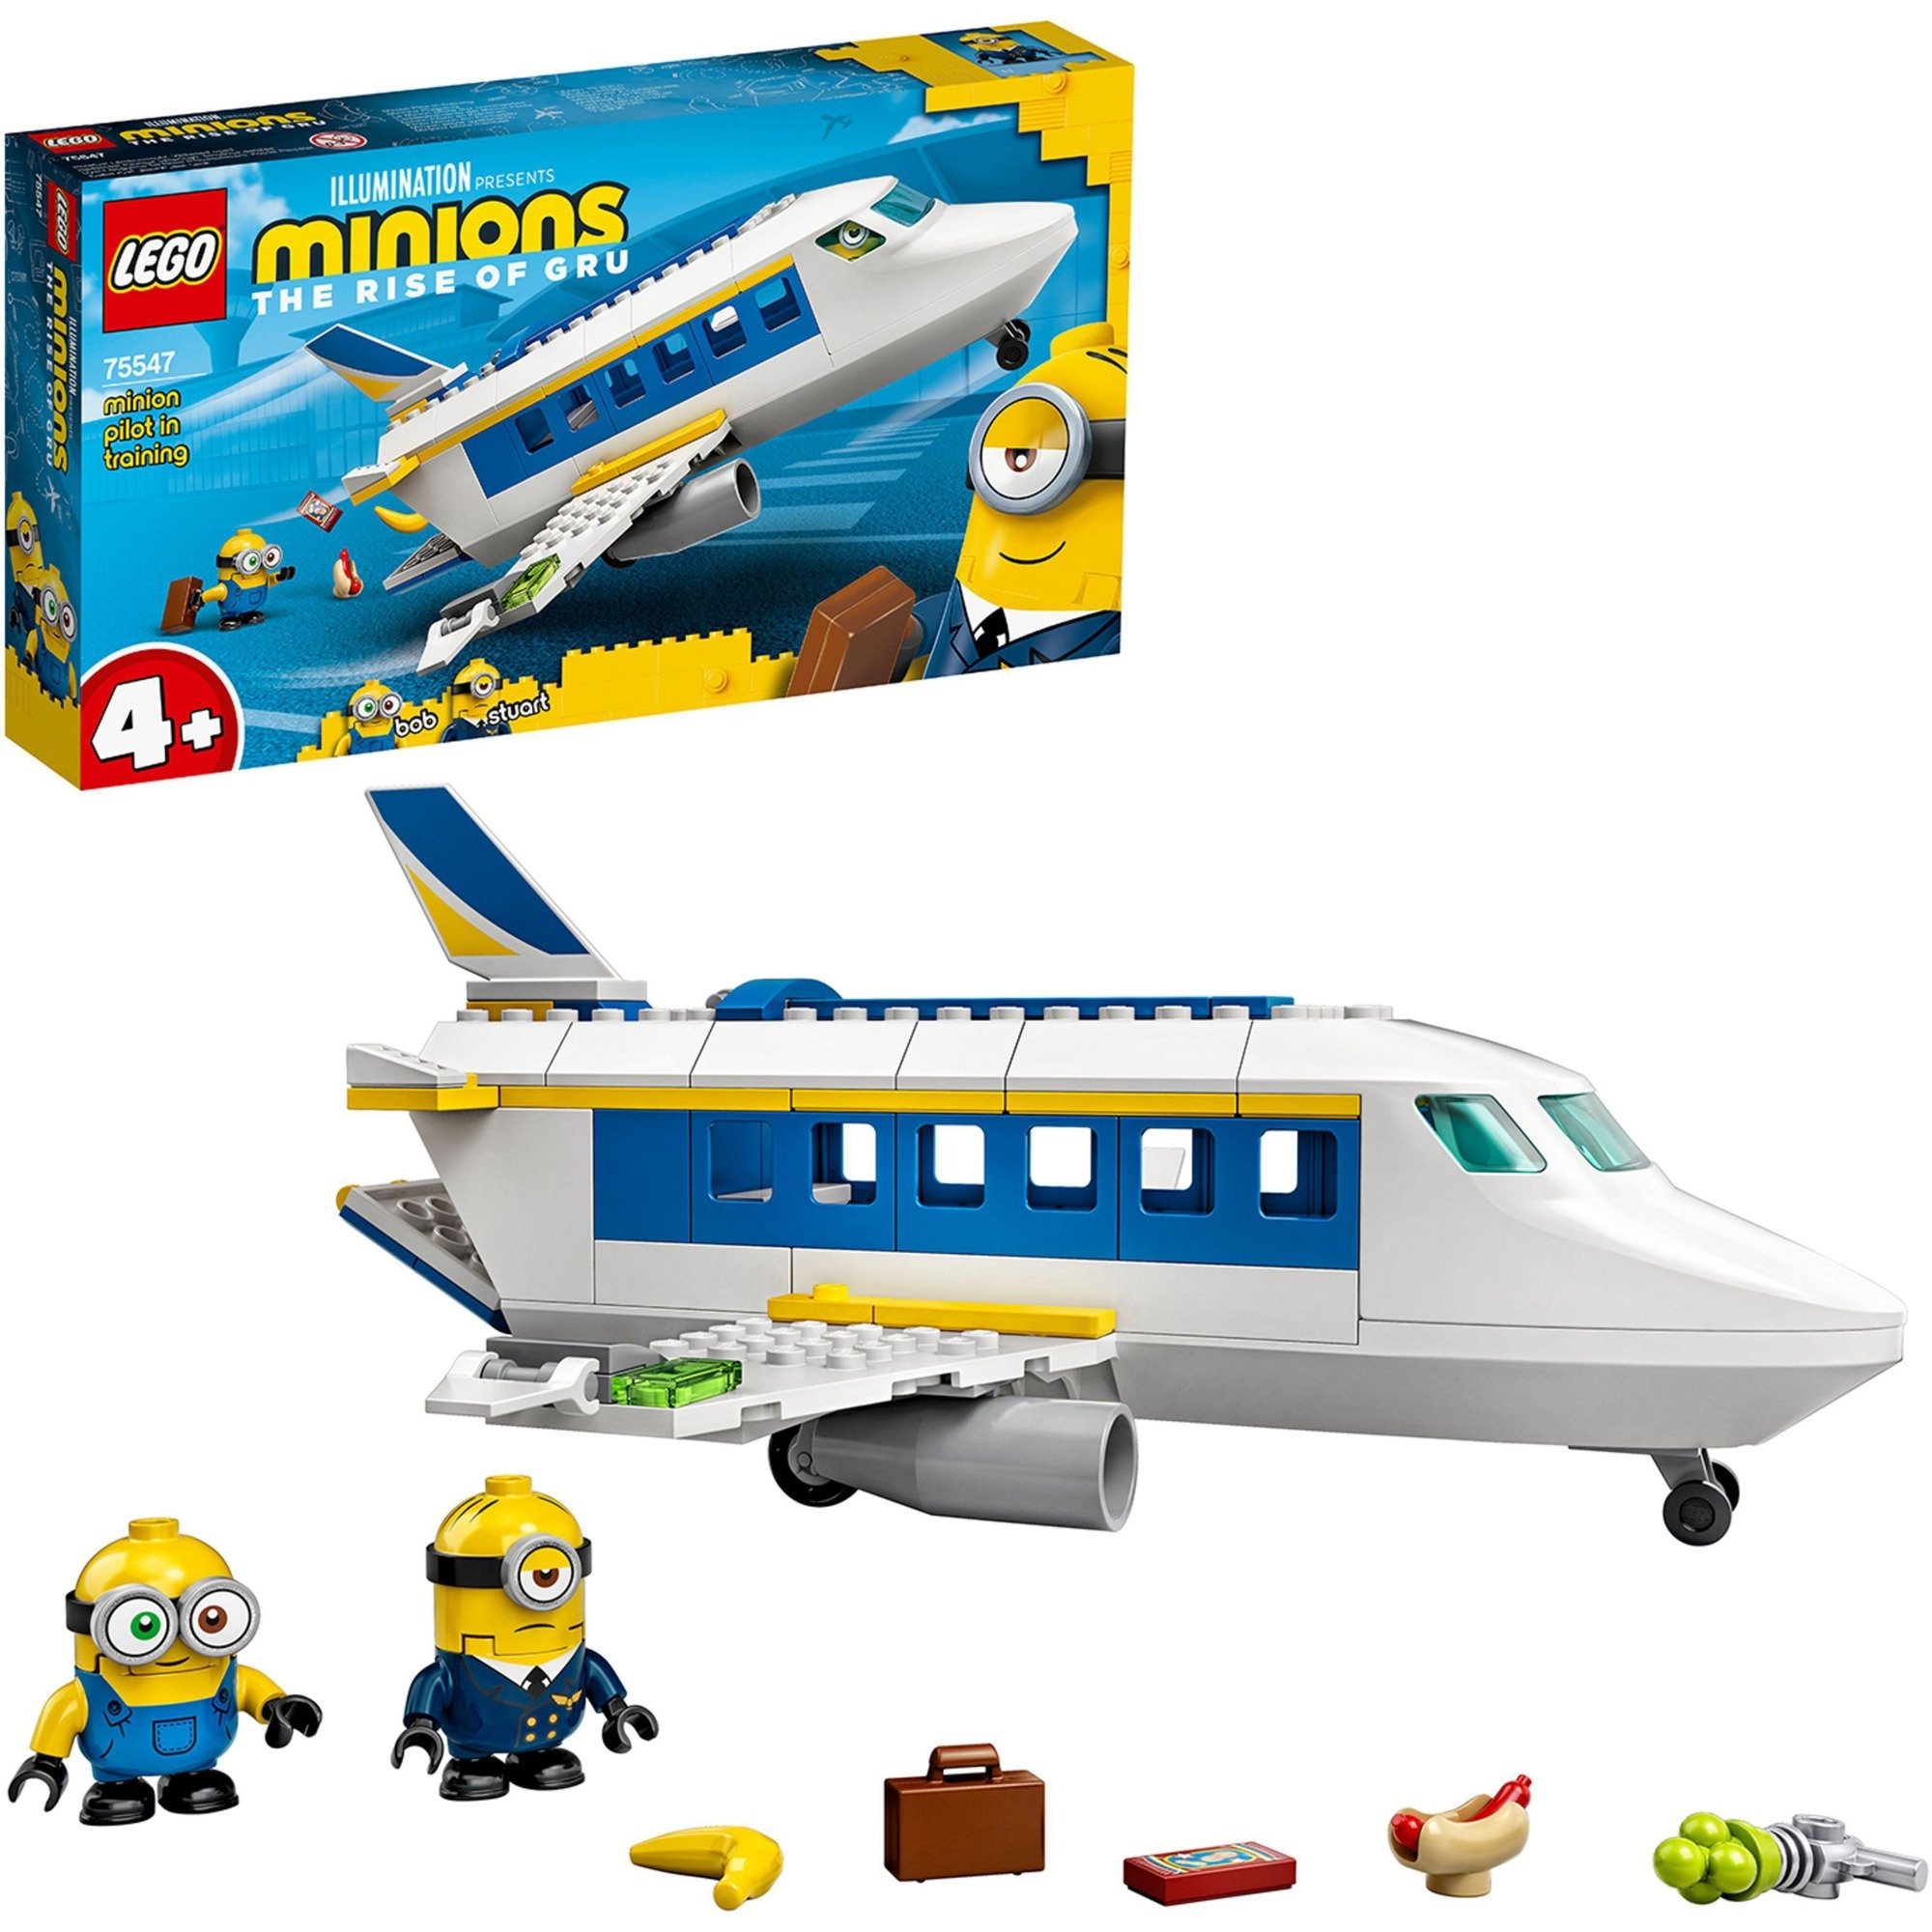 Spielzeug: Lego 75547 Minions Flugzeug